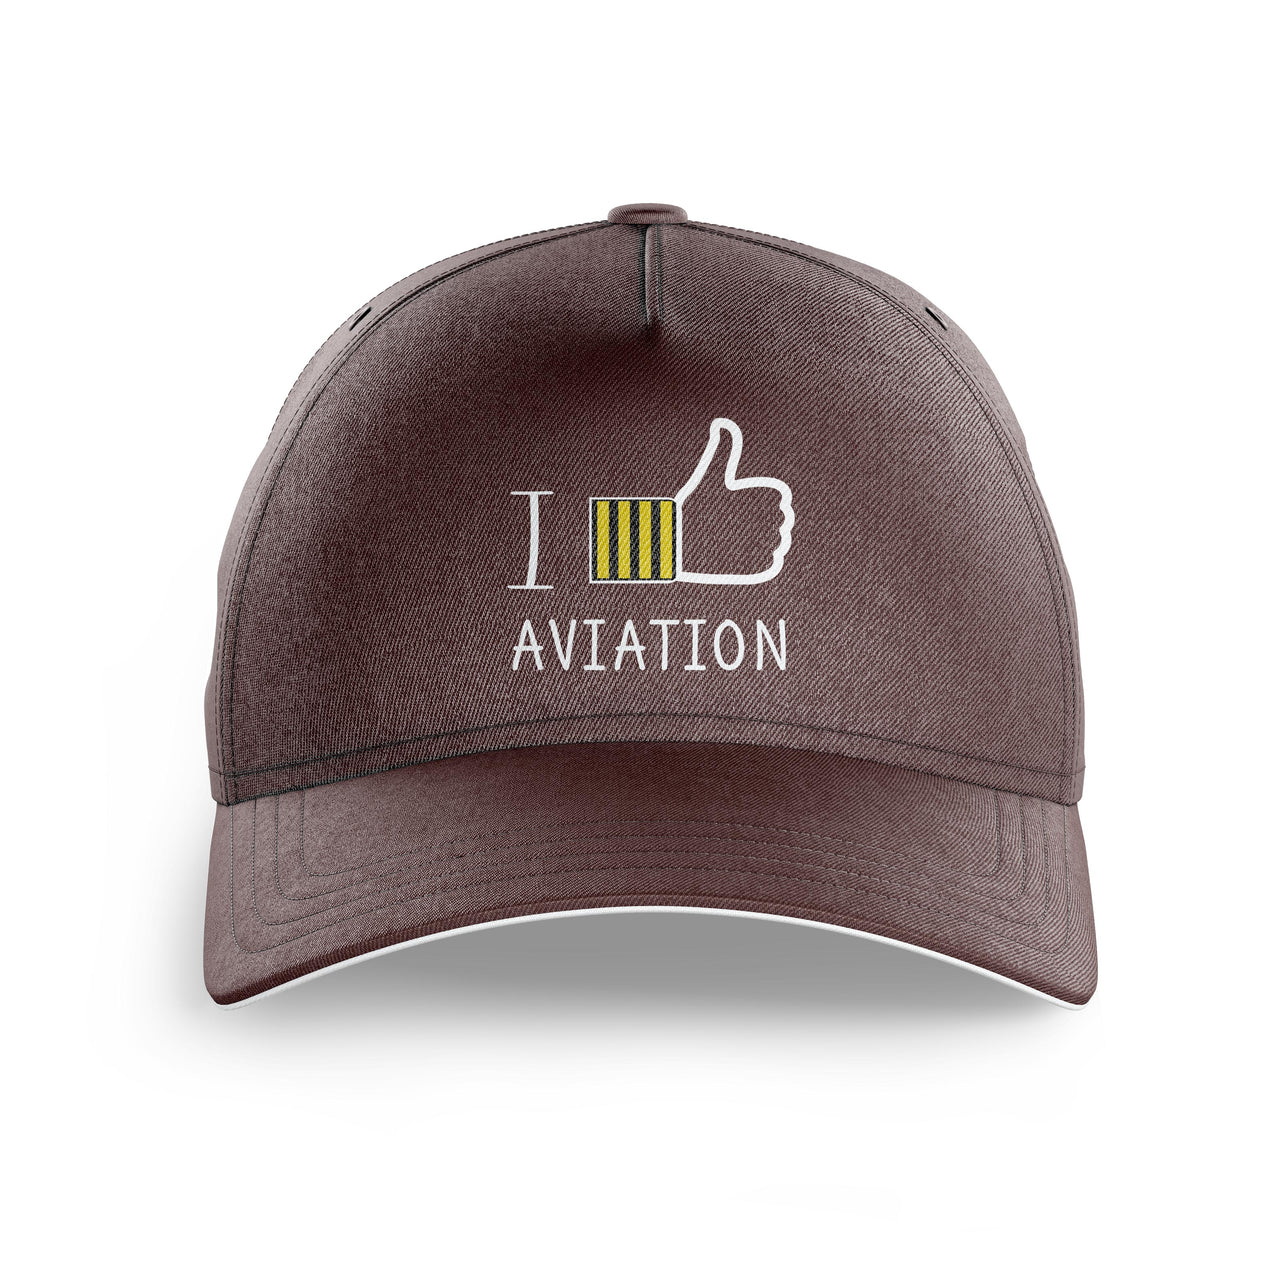 I Like Aviation Printed Hats